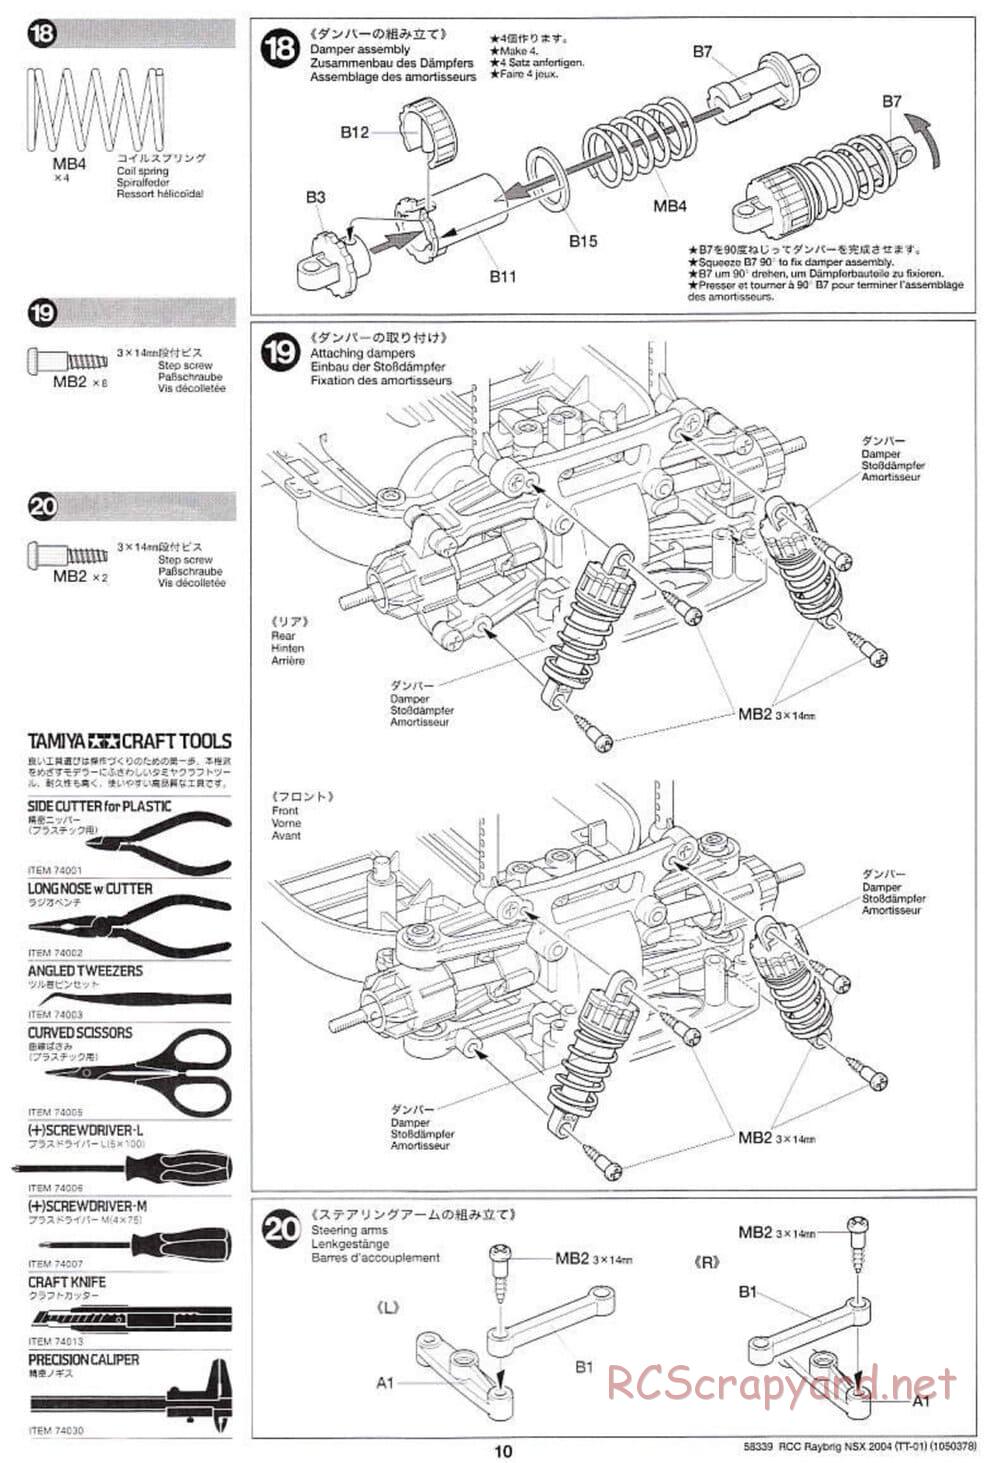 Tamiya - Raybrig NSX 2004 Chassis - Manual - Page 10